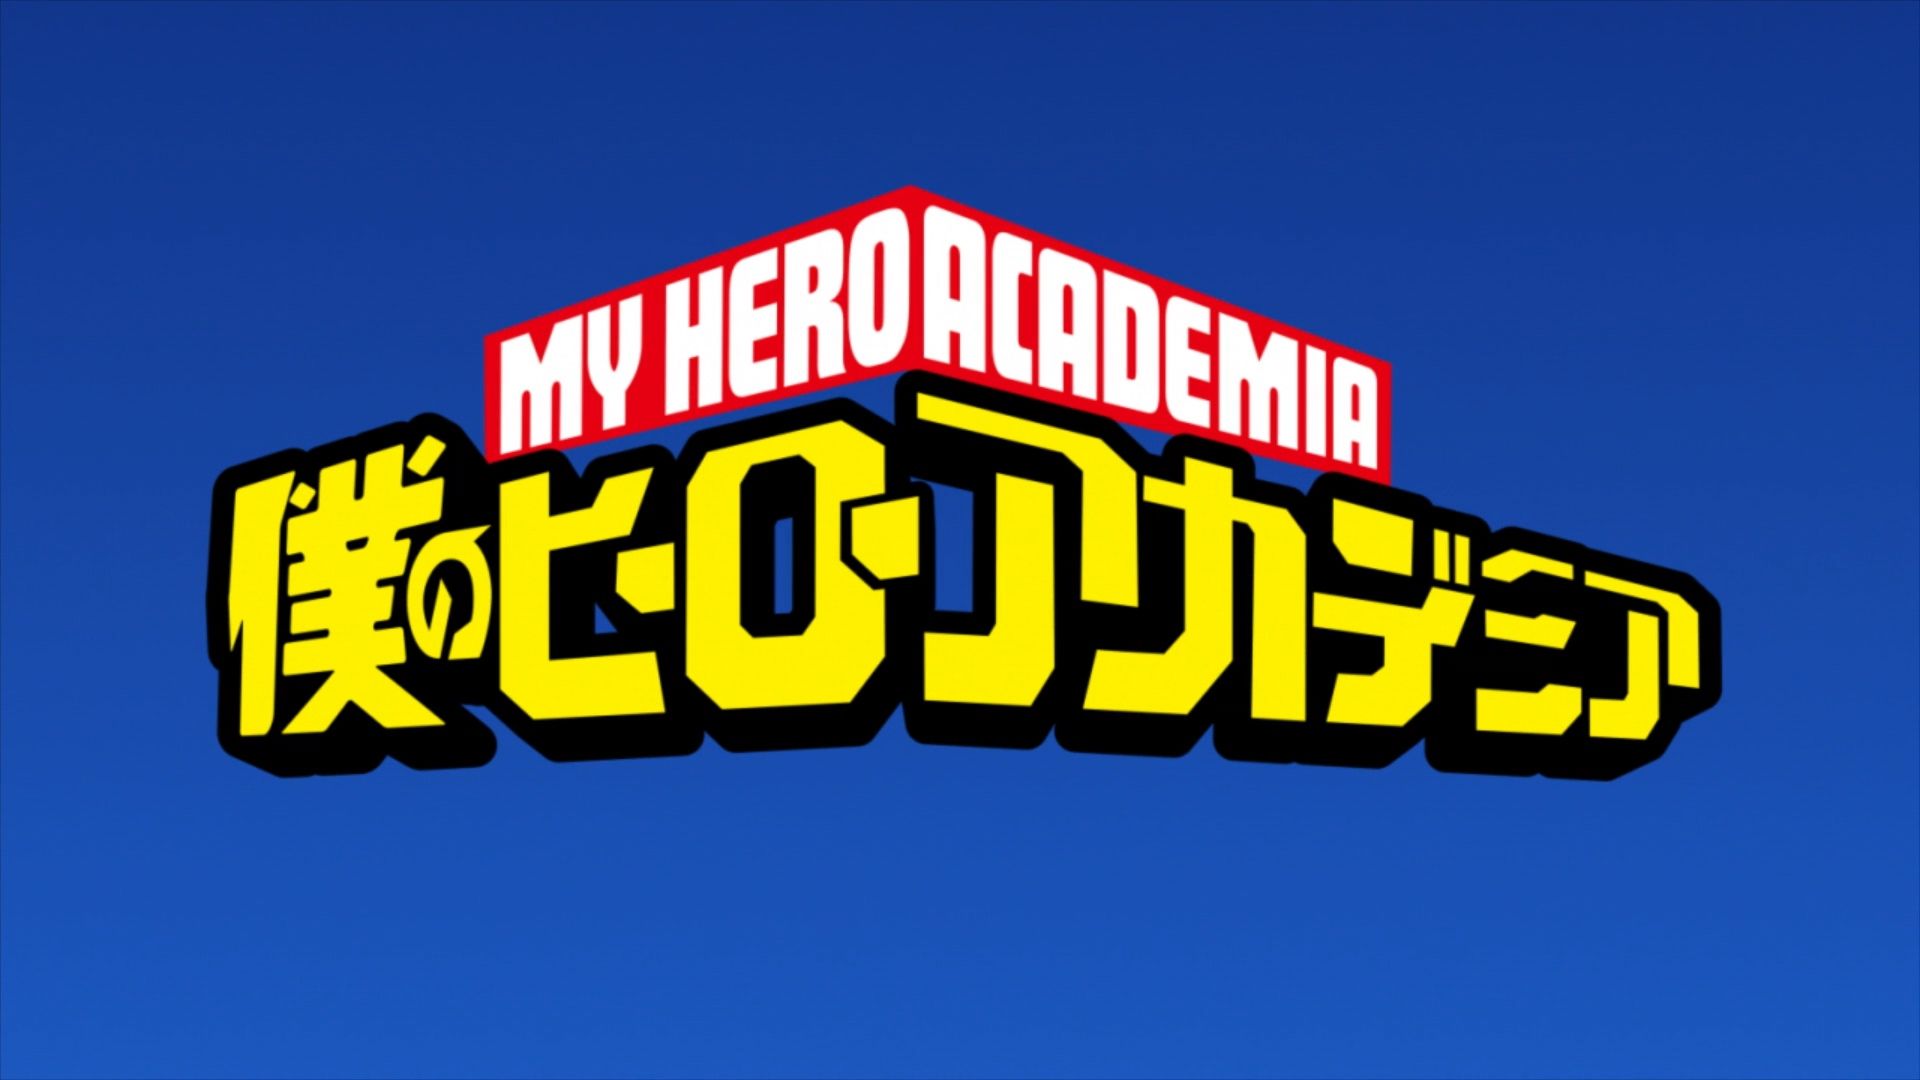 Boku no Hero Academia